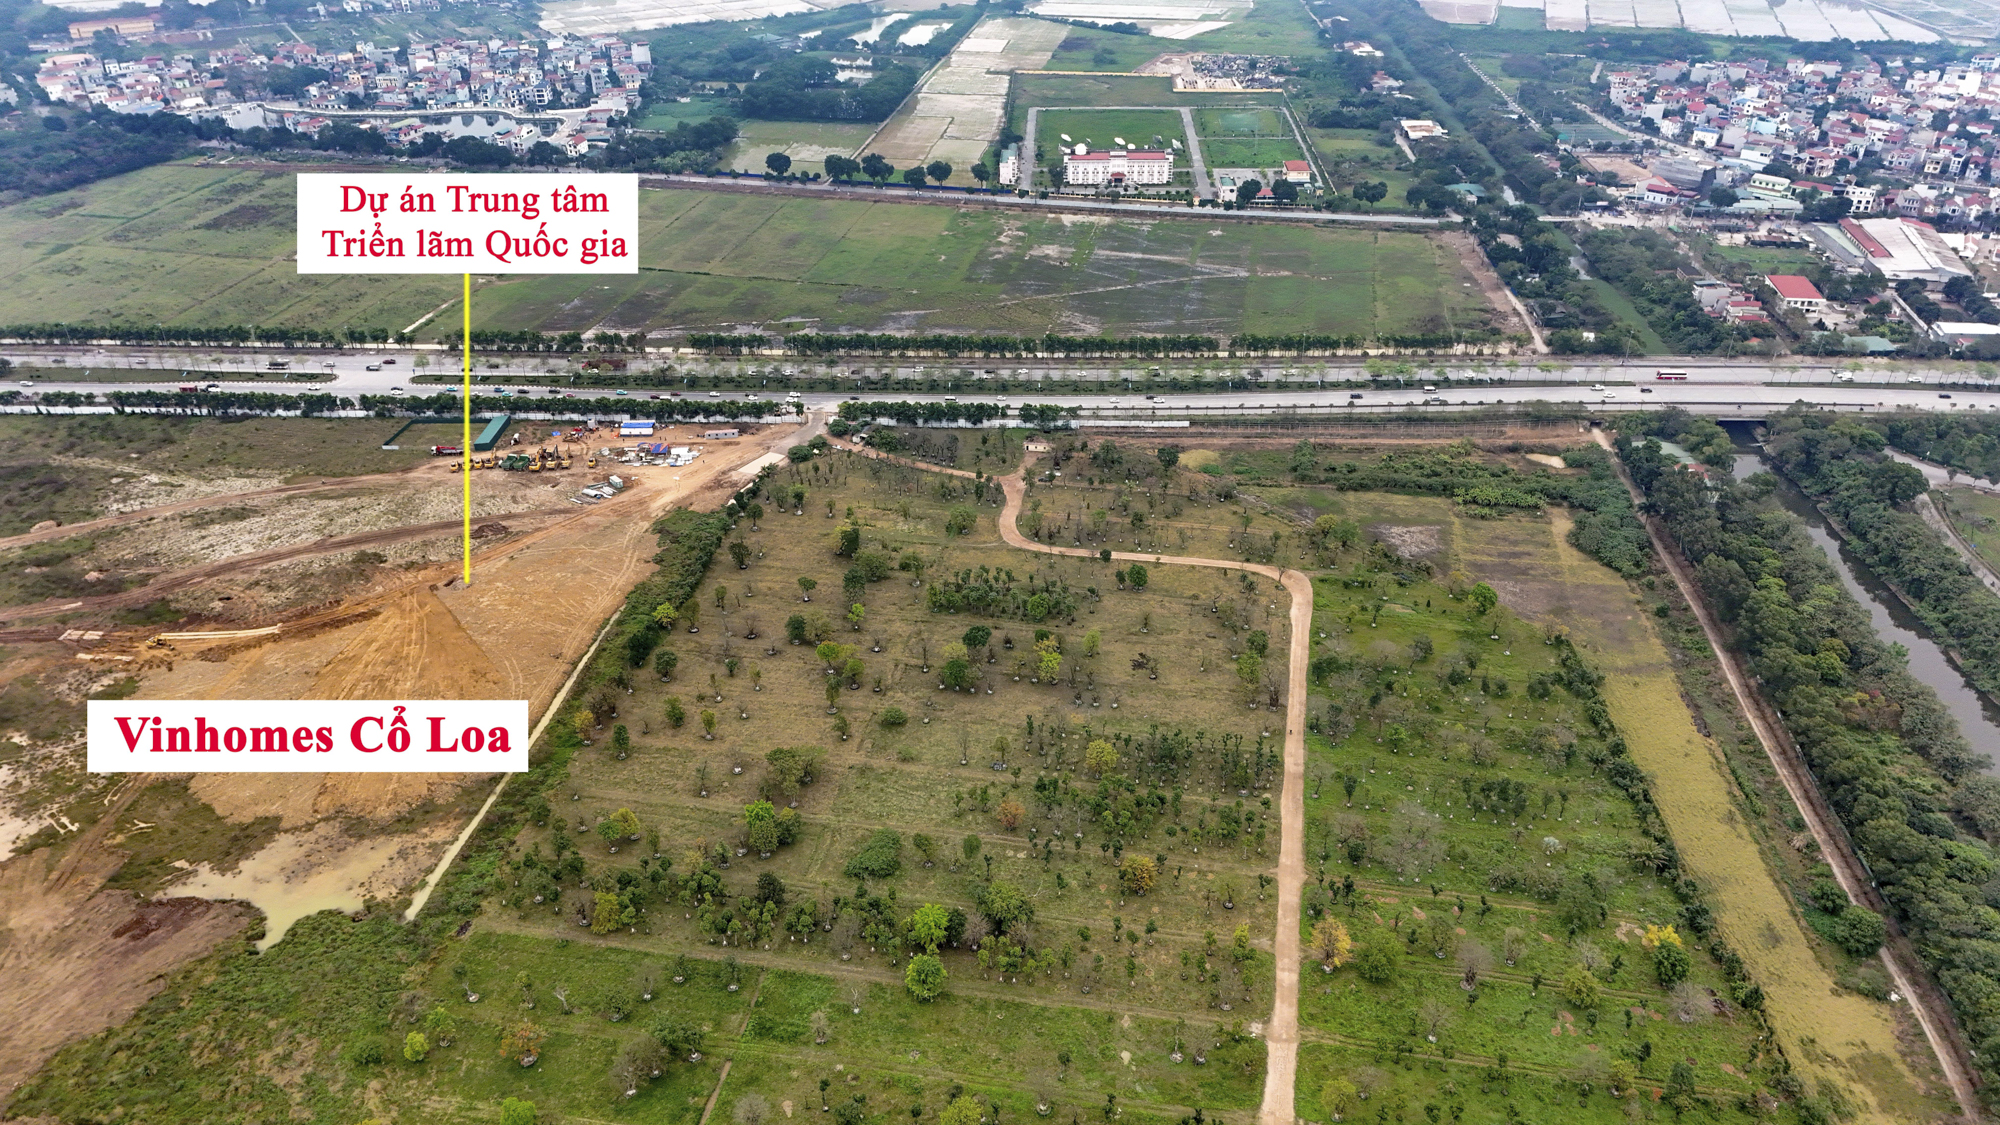 Khu vực  sắp được xây cầu 20.000 tỷ đồng vượt 2 con sông lớn, đi qua đại dự án của Vinhomes ở Hà Nội- Ảnh 8.